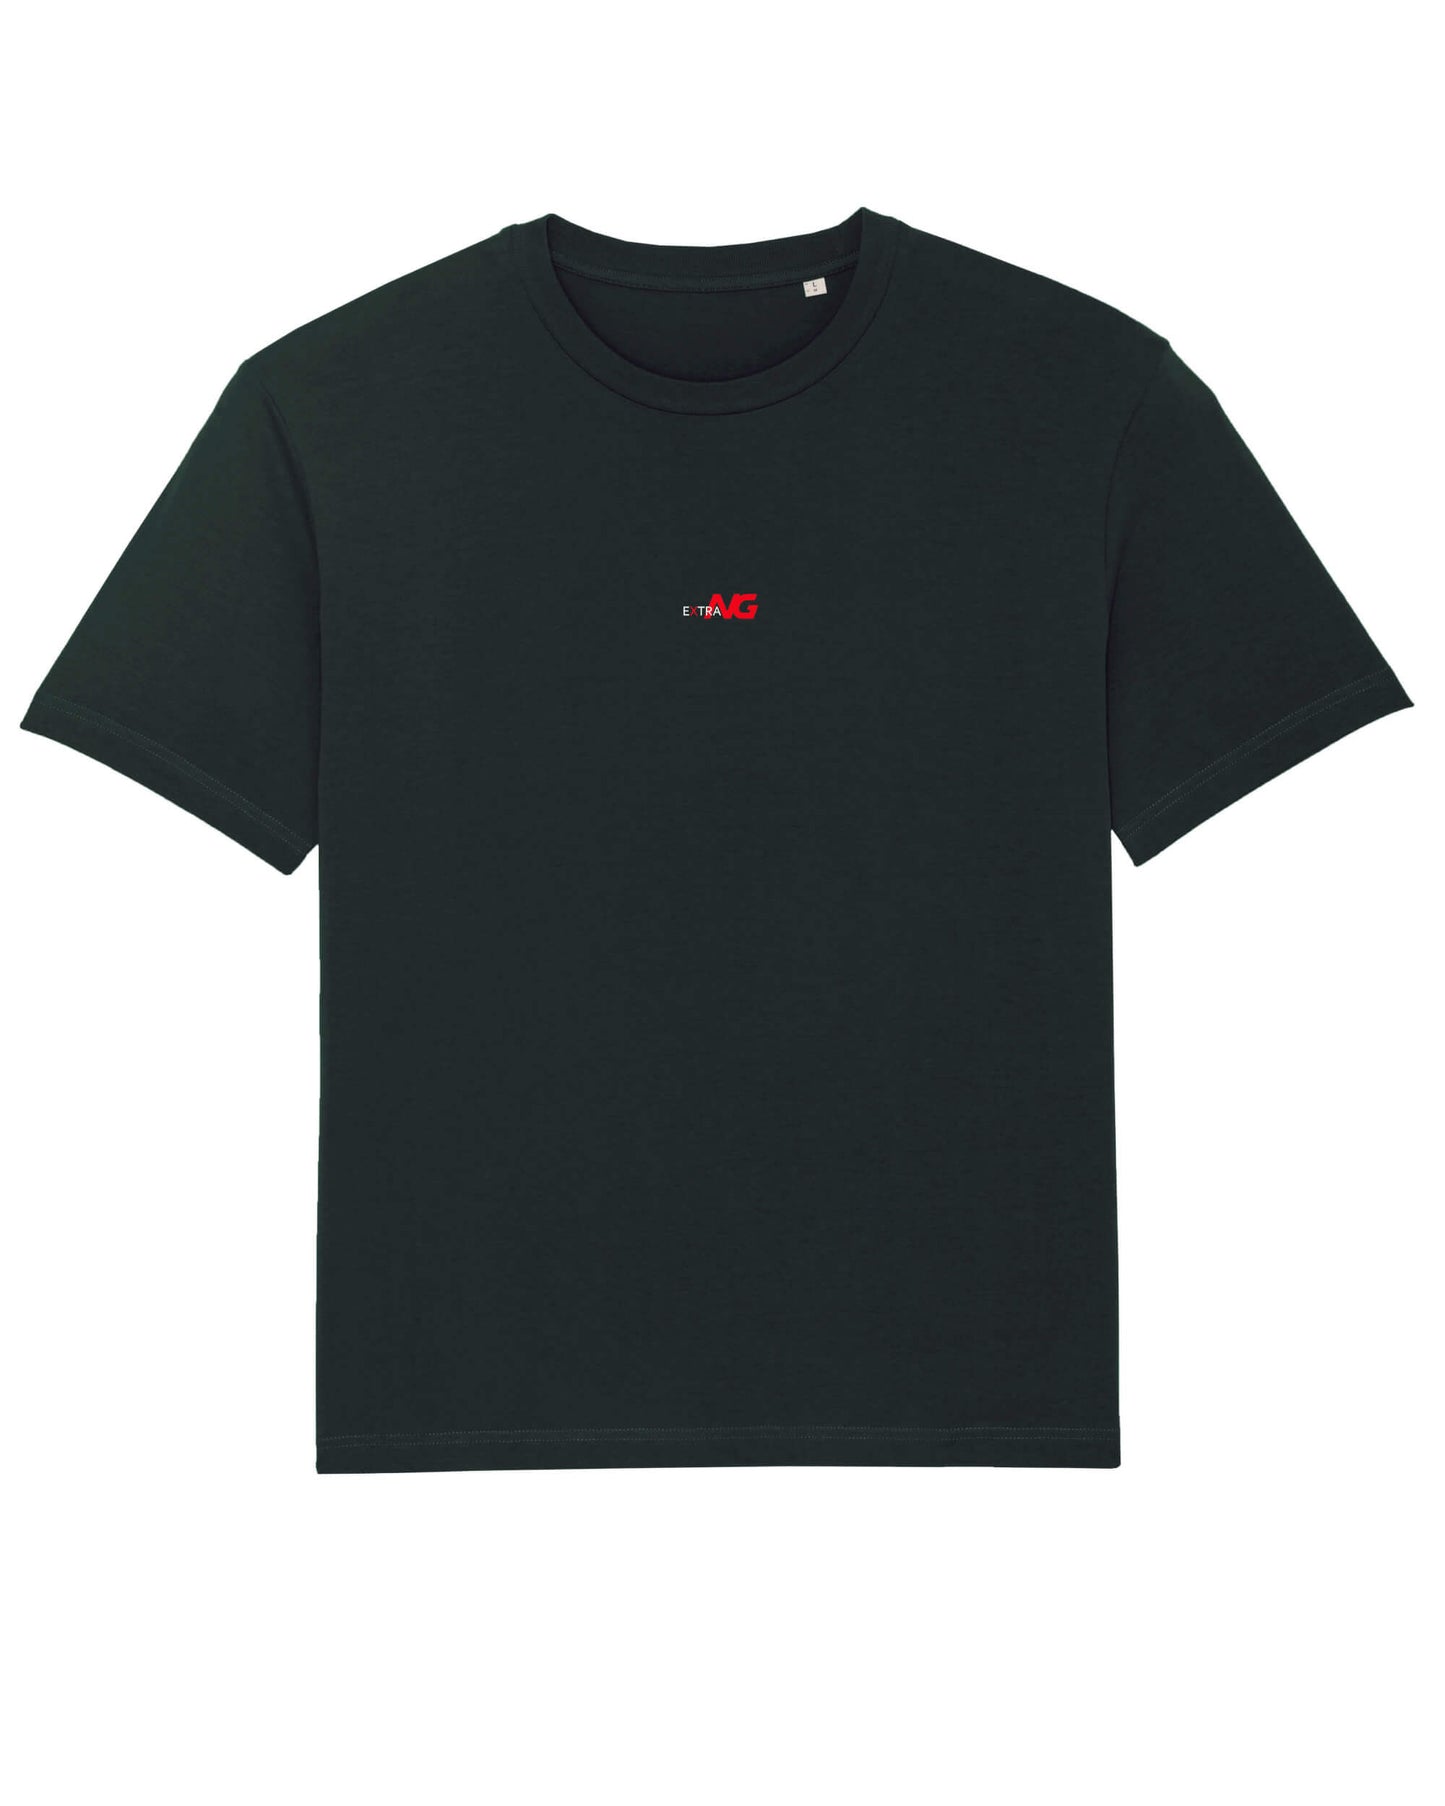 Produktbild eines schwarzen T-Shirts aus 100% Bio-Baumwolle mit dem EXTRA NG Typlogo, mittig auf der Vorderseite. 